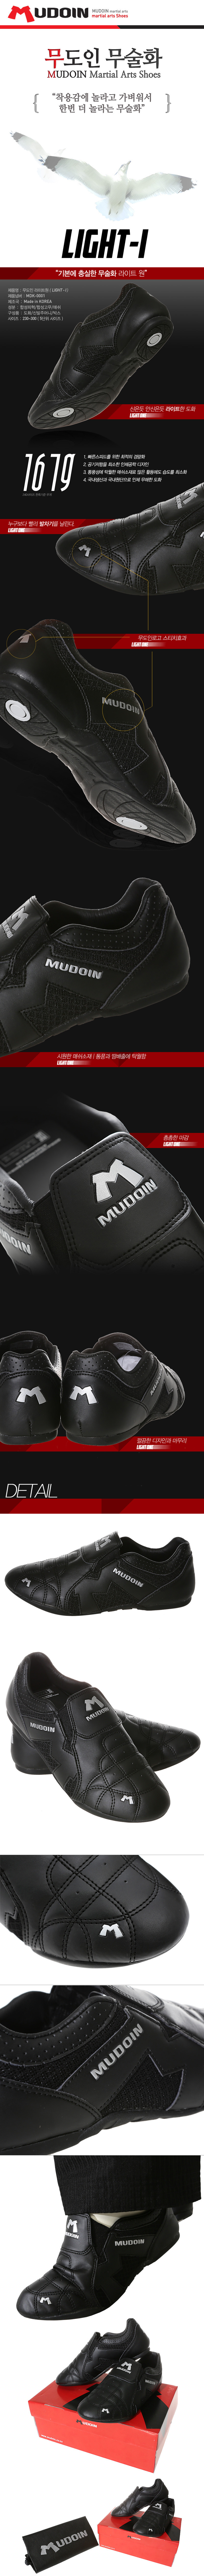 Mudoin Light-1 Taekwondo Shoes